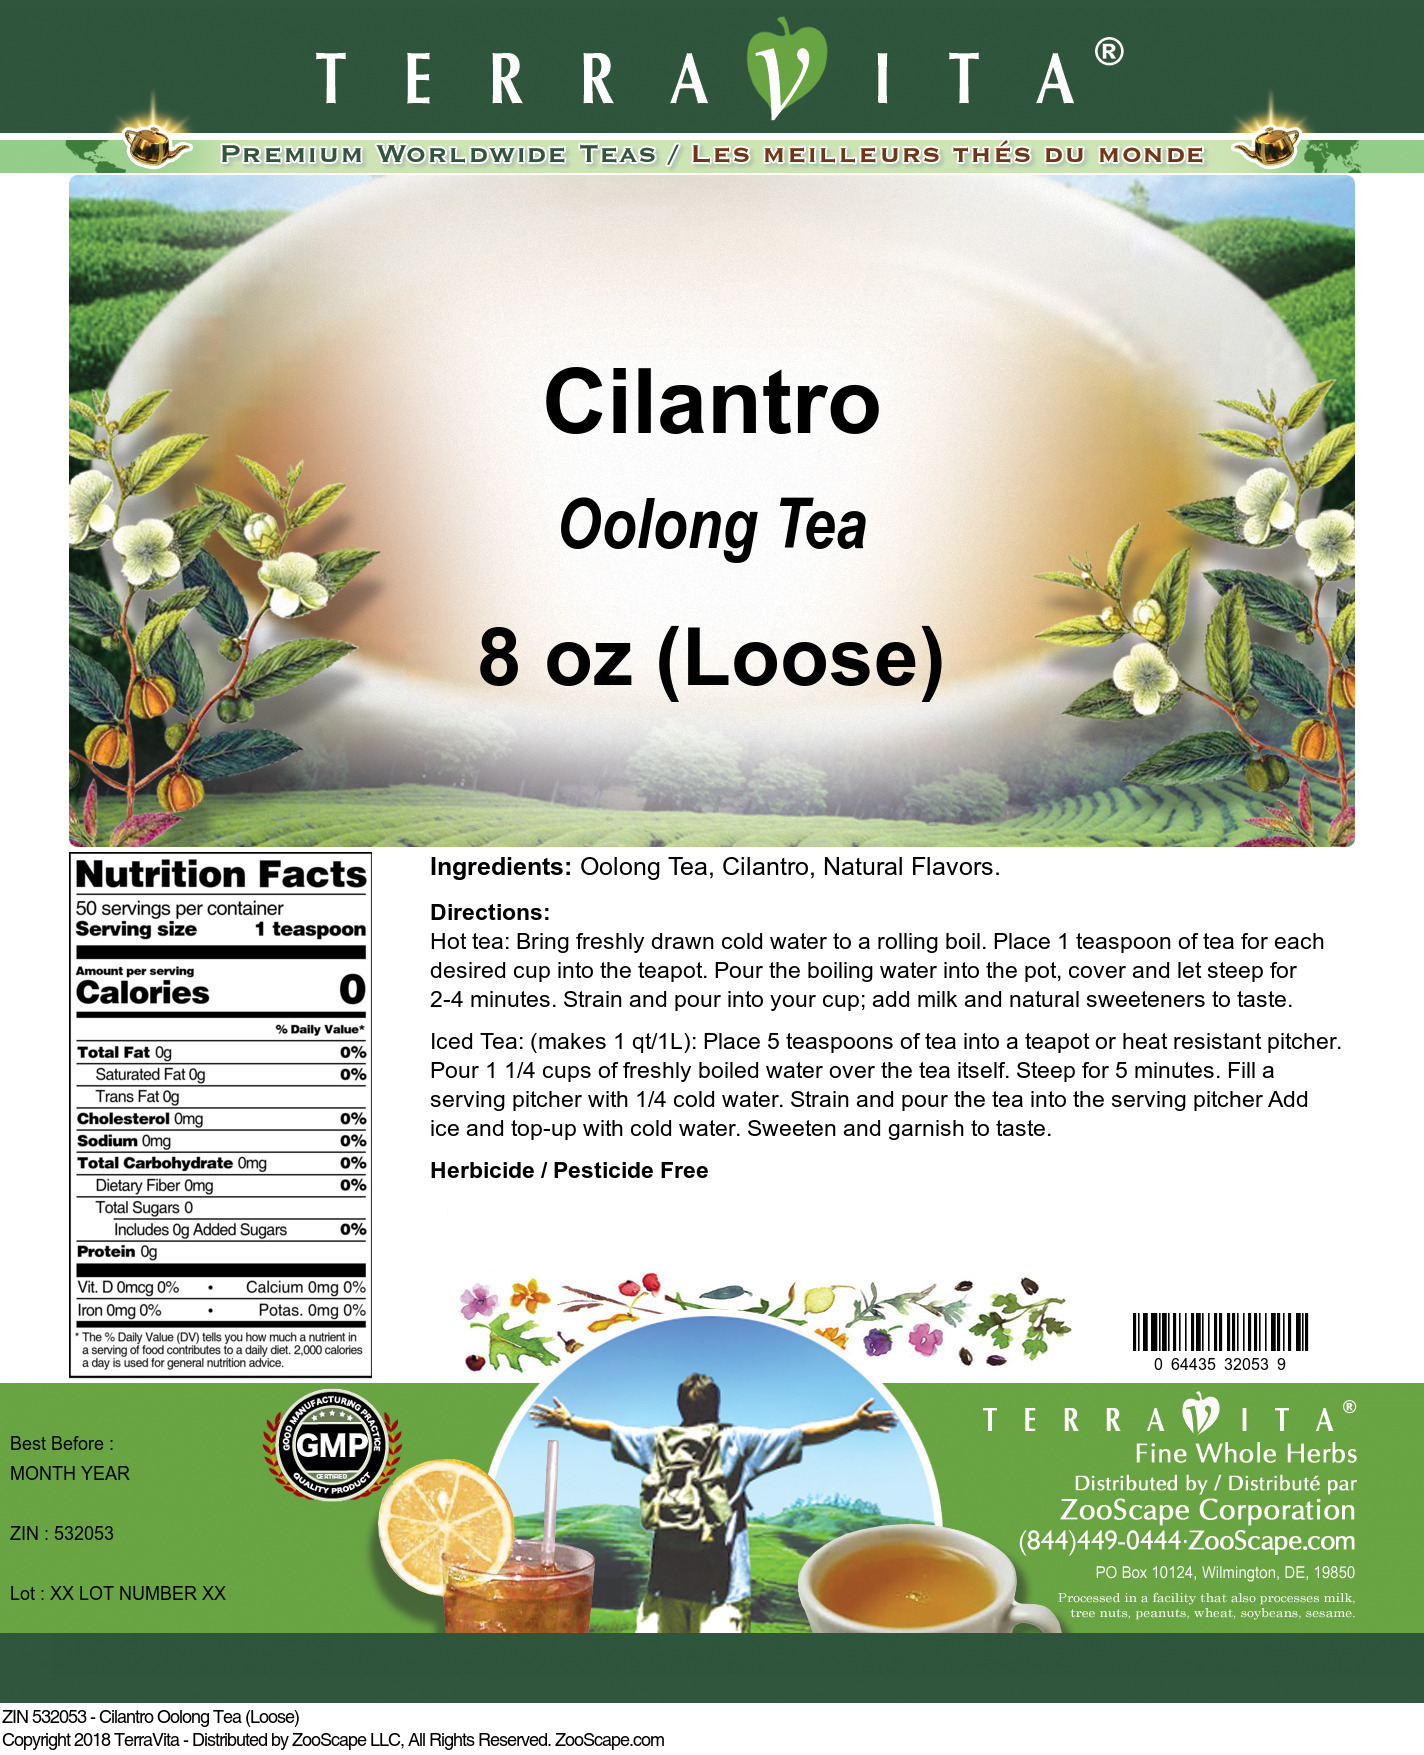 Cilantro Oolong Tea (Loose) - Label